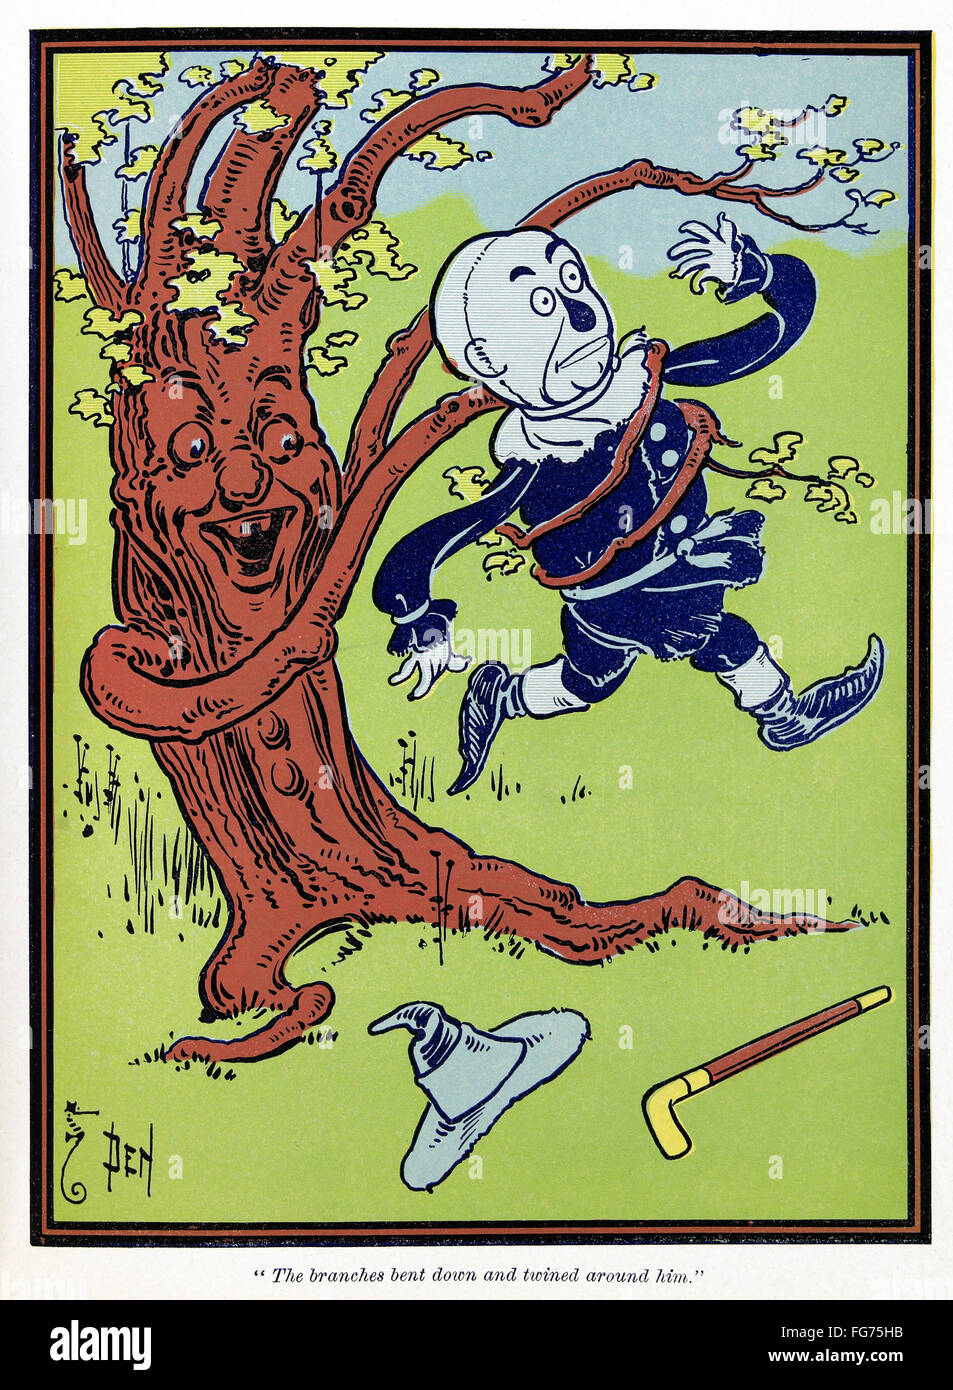 WIZARD OF OZ, 1900. /N'Tegli rami piegati e intrecciati intorno a lui.' illustrazione di W.W. Denslow per la prima edizione di "Wonderful Wizard of Oz' da L. Frank Baum, 1900. Foto Stock